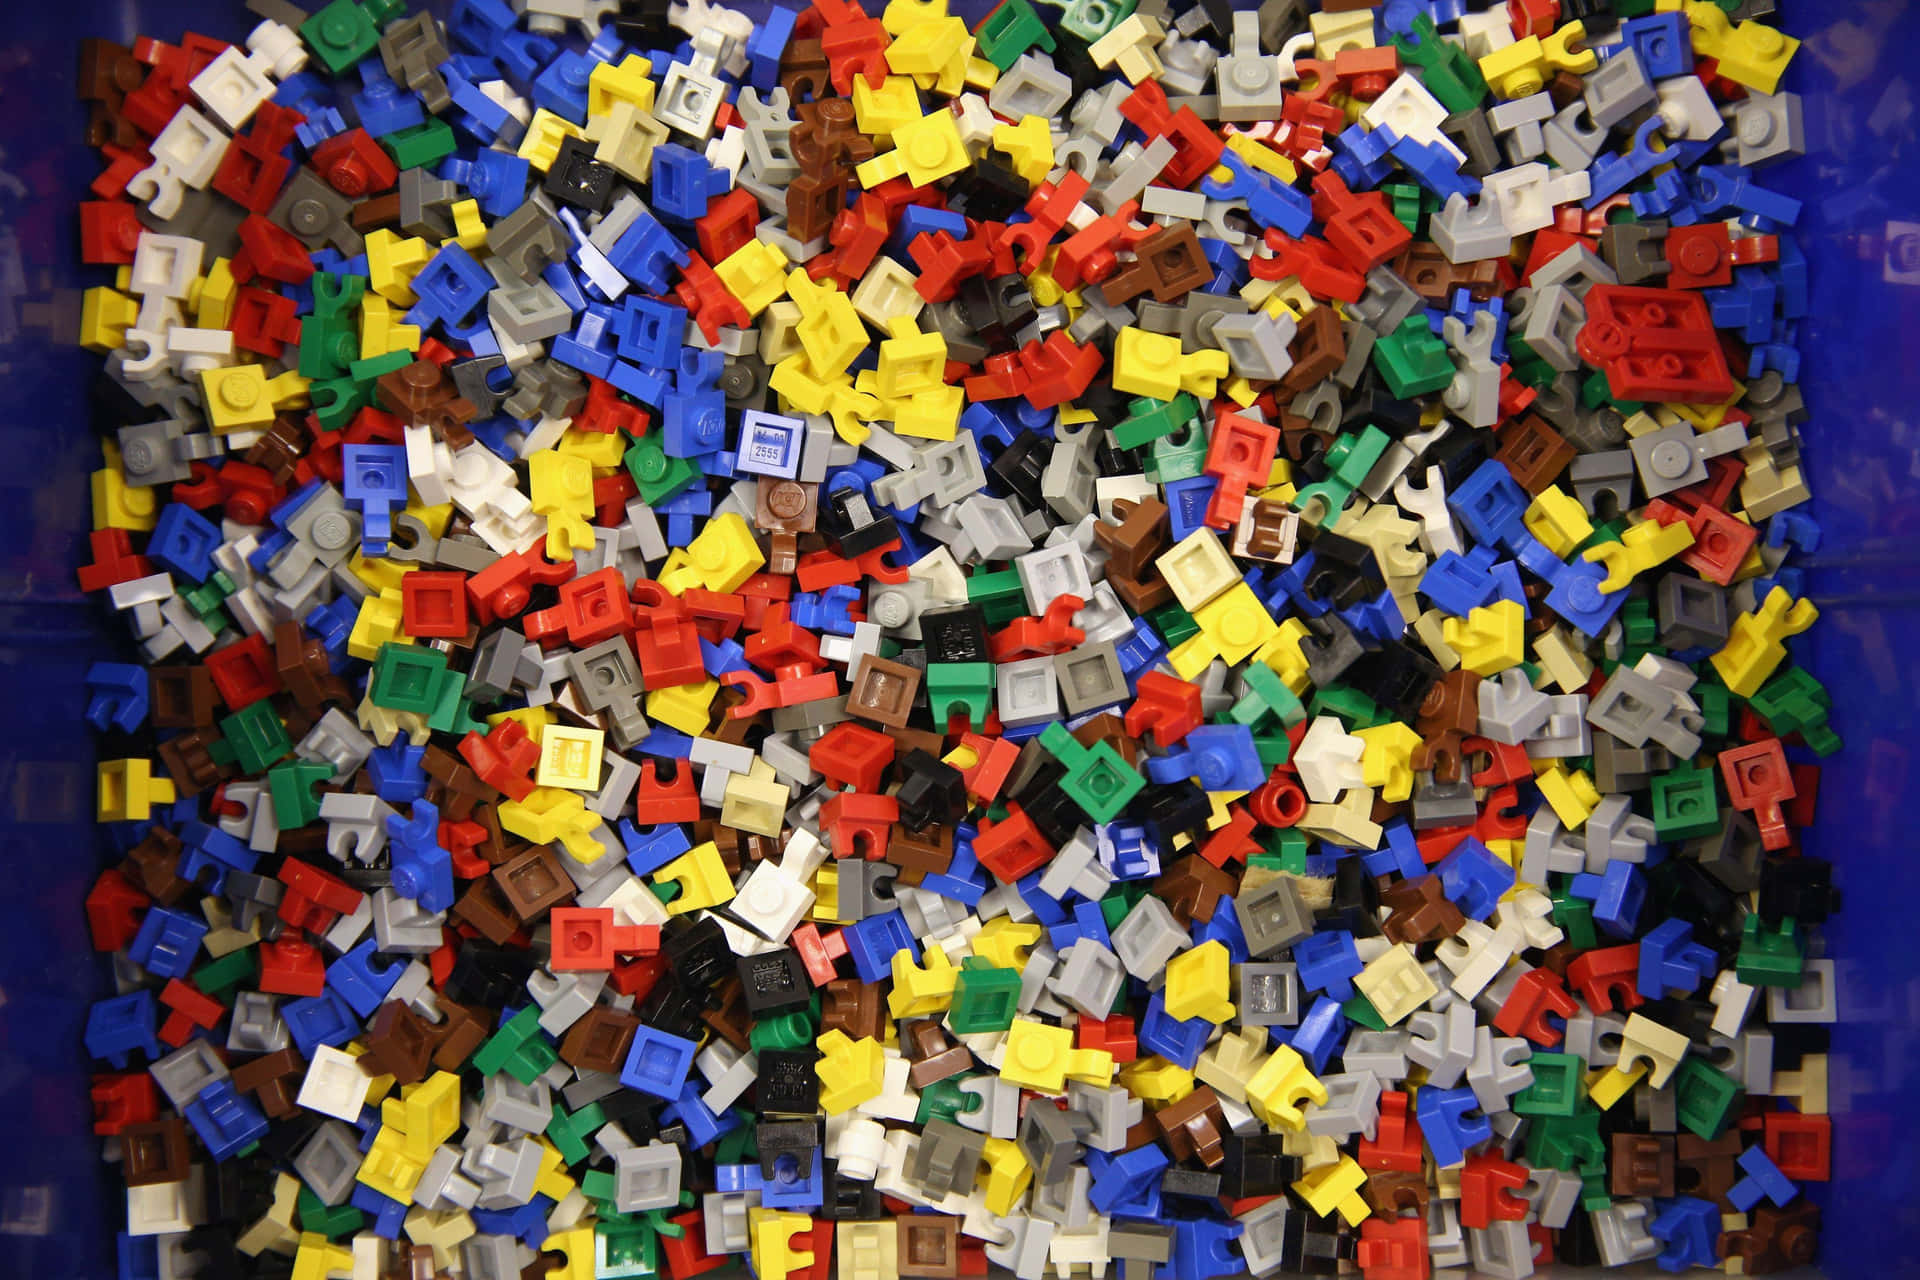 Billeder af Lego giver et farverigt og levende udseende.